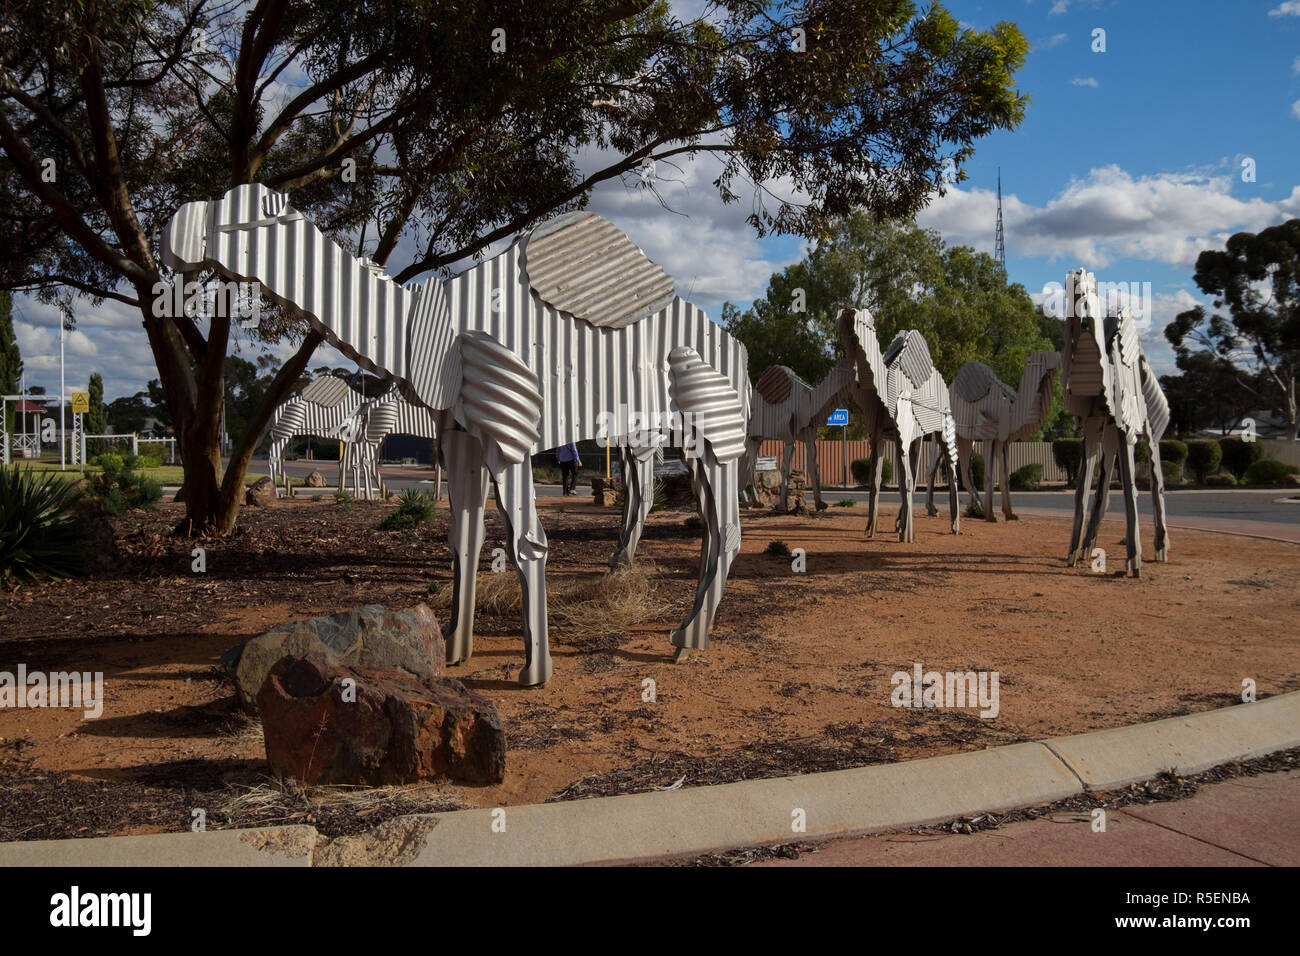 Un set di metallo corrogated camerls nella rotonda principale il Rotary nella piccola cittadina di Norseman in Wester Australia. Foto Stock